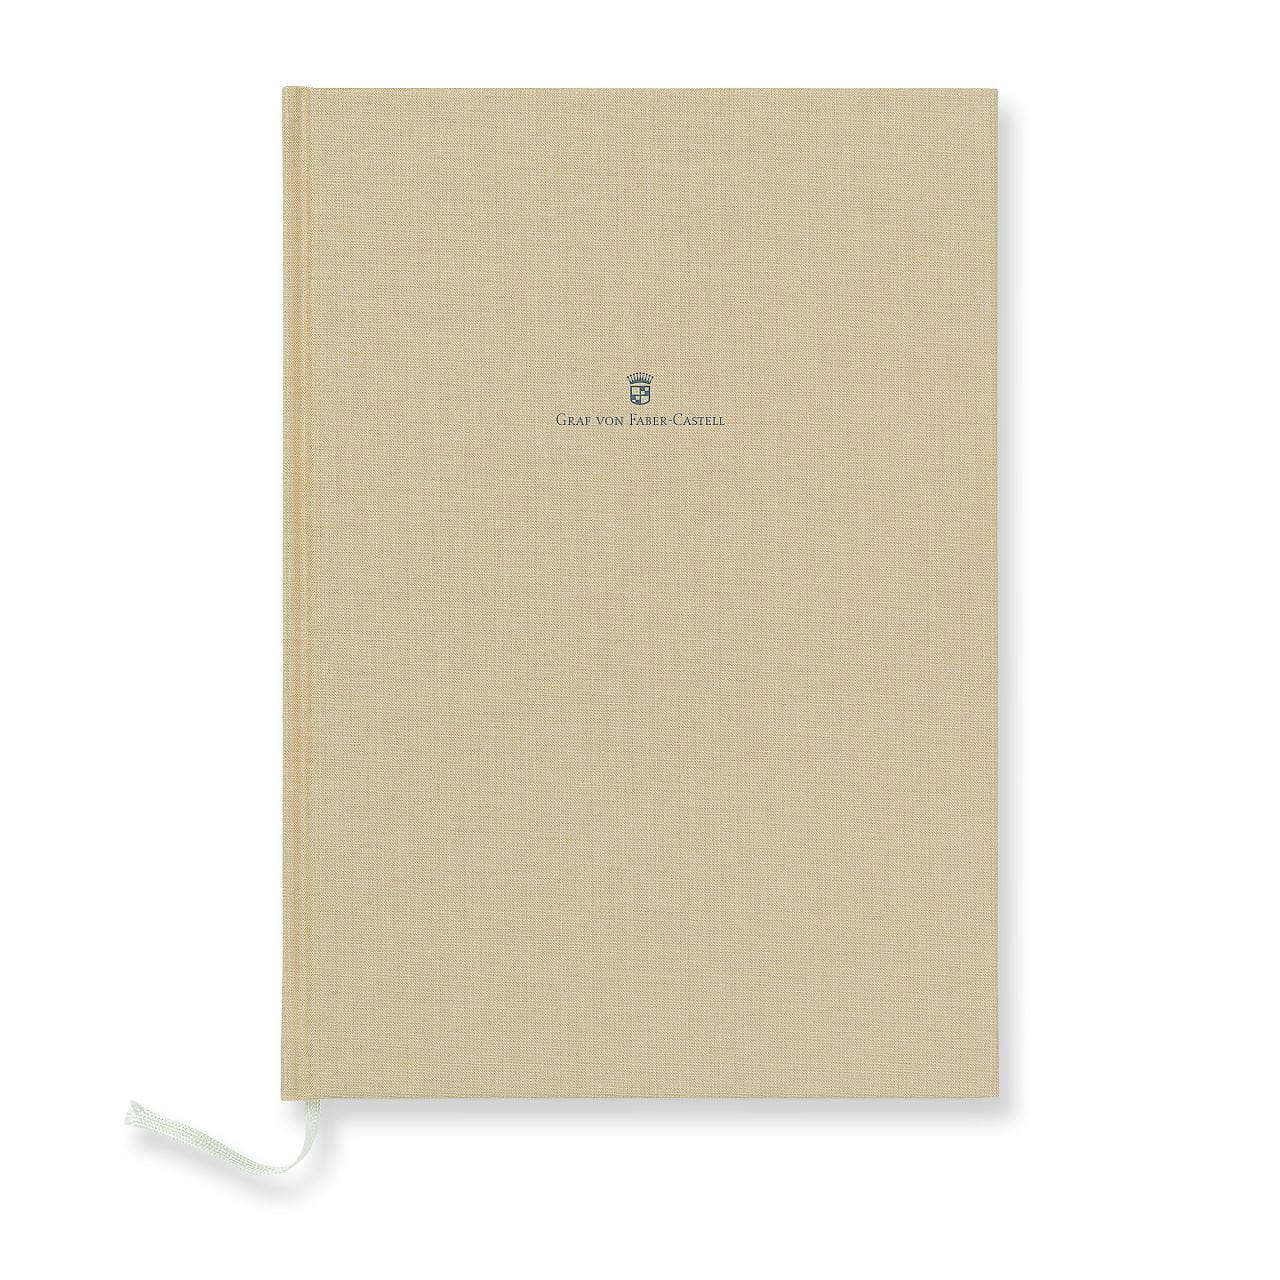 Graf-von-Faber-Castell - Caderno com capa de linho de tamanho A4, Marrom dourade